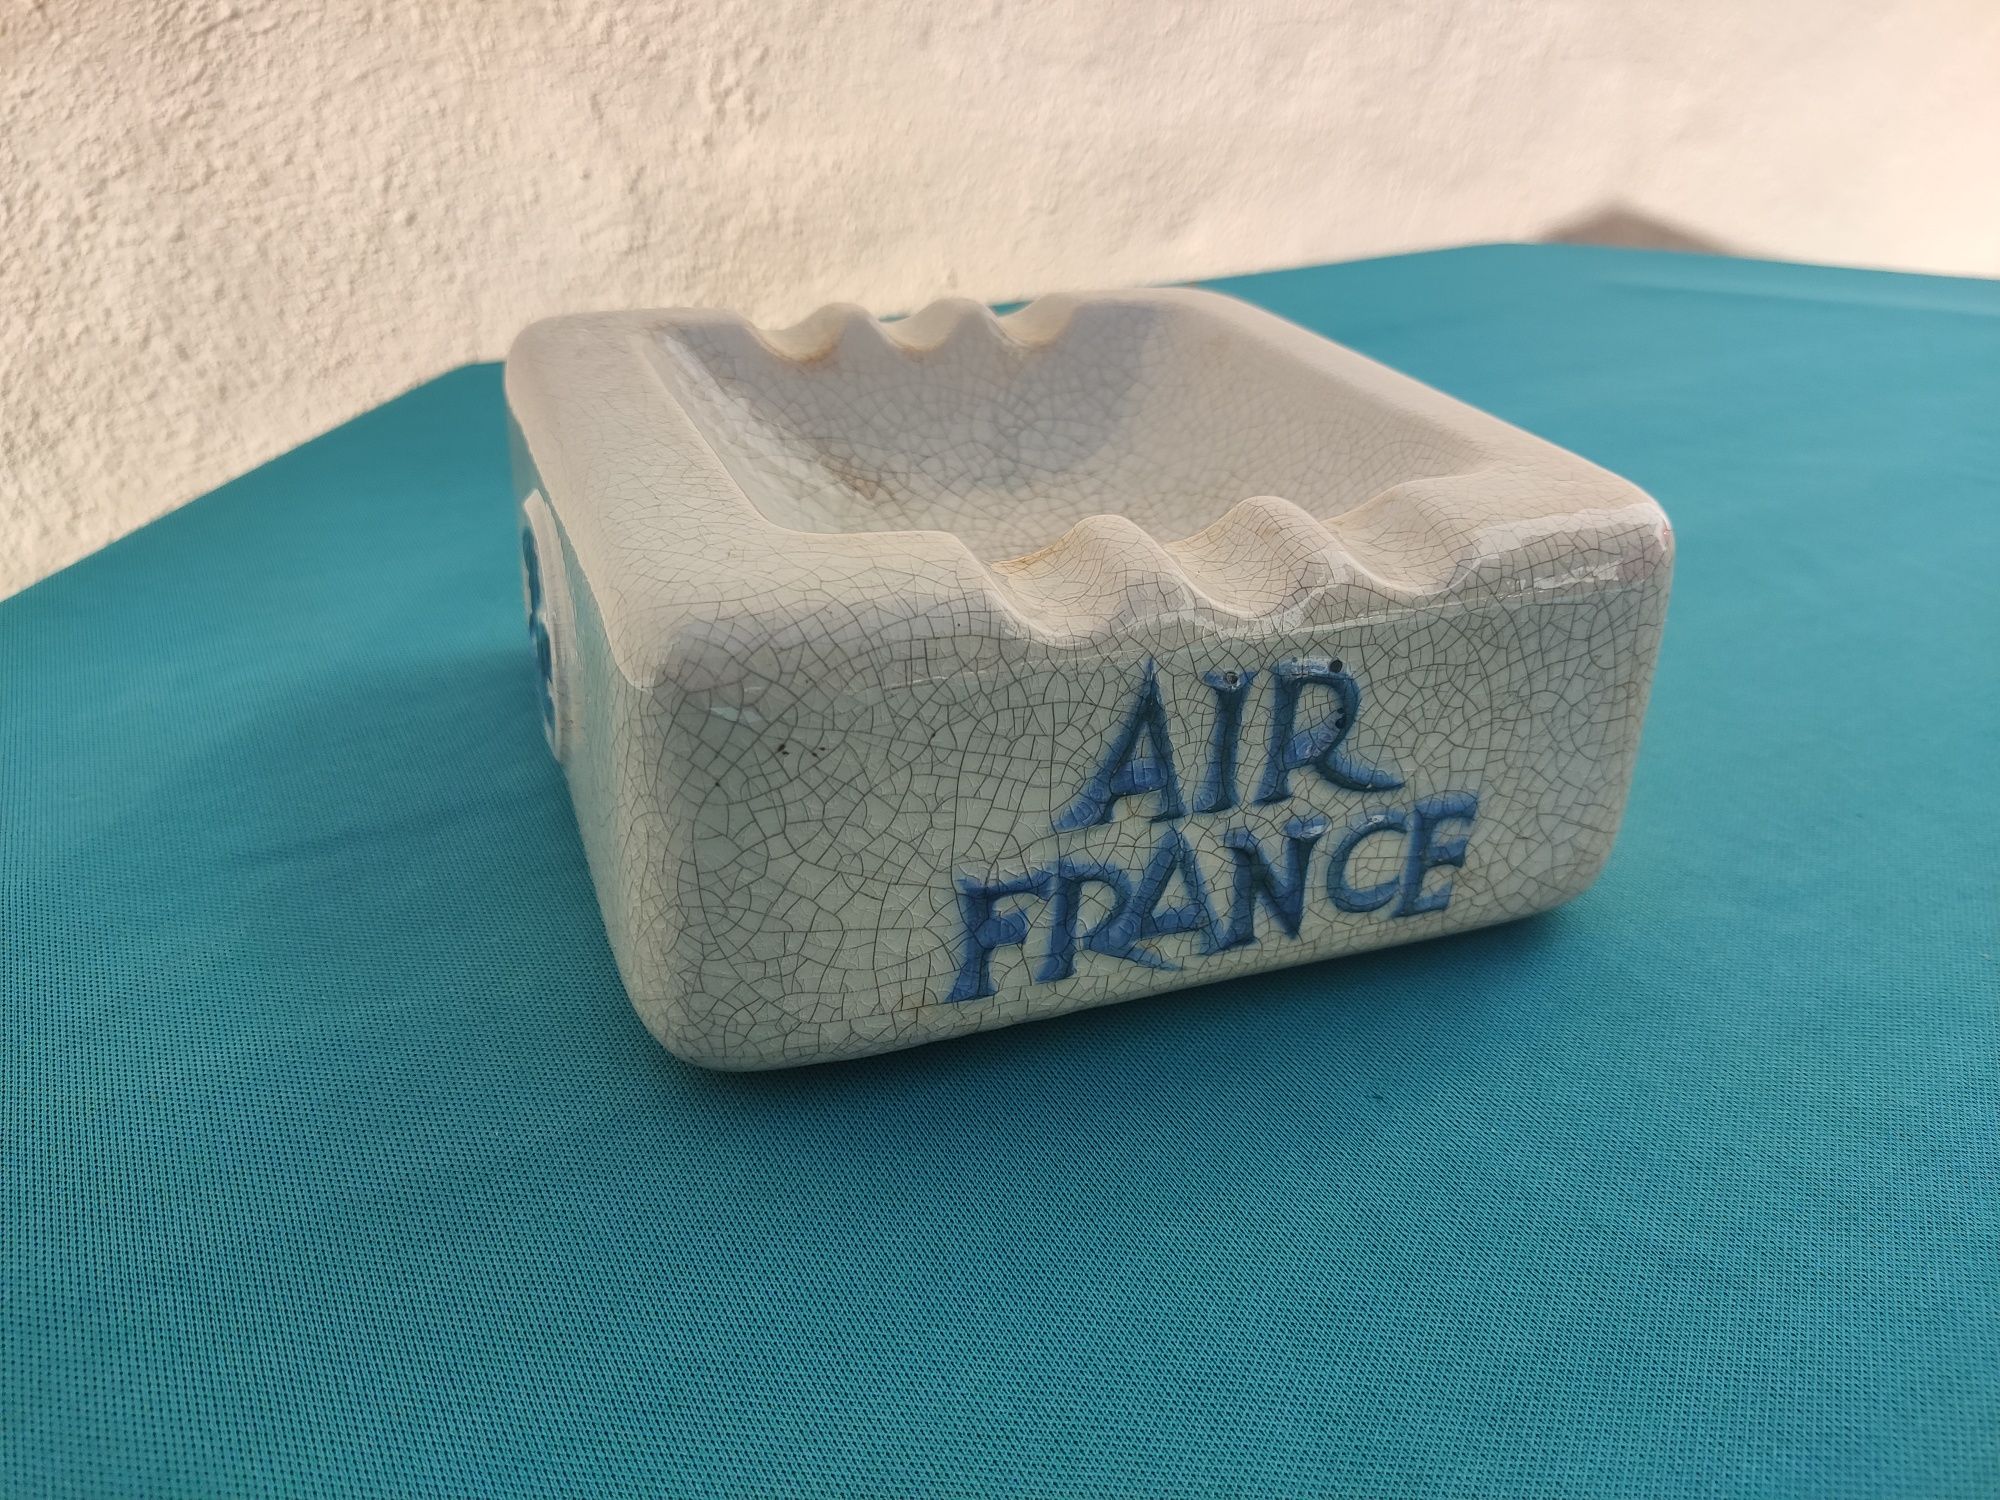 Cinzeiro antigo publicitário Sacavém - Air France (RARO)